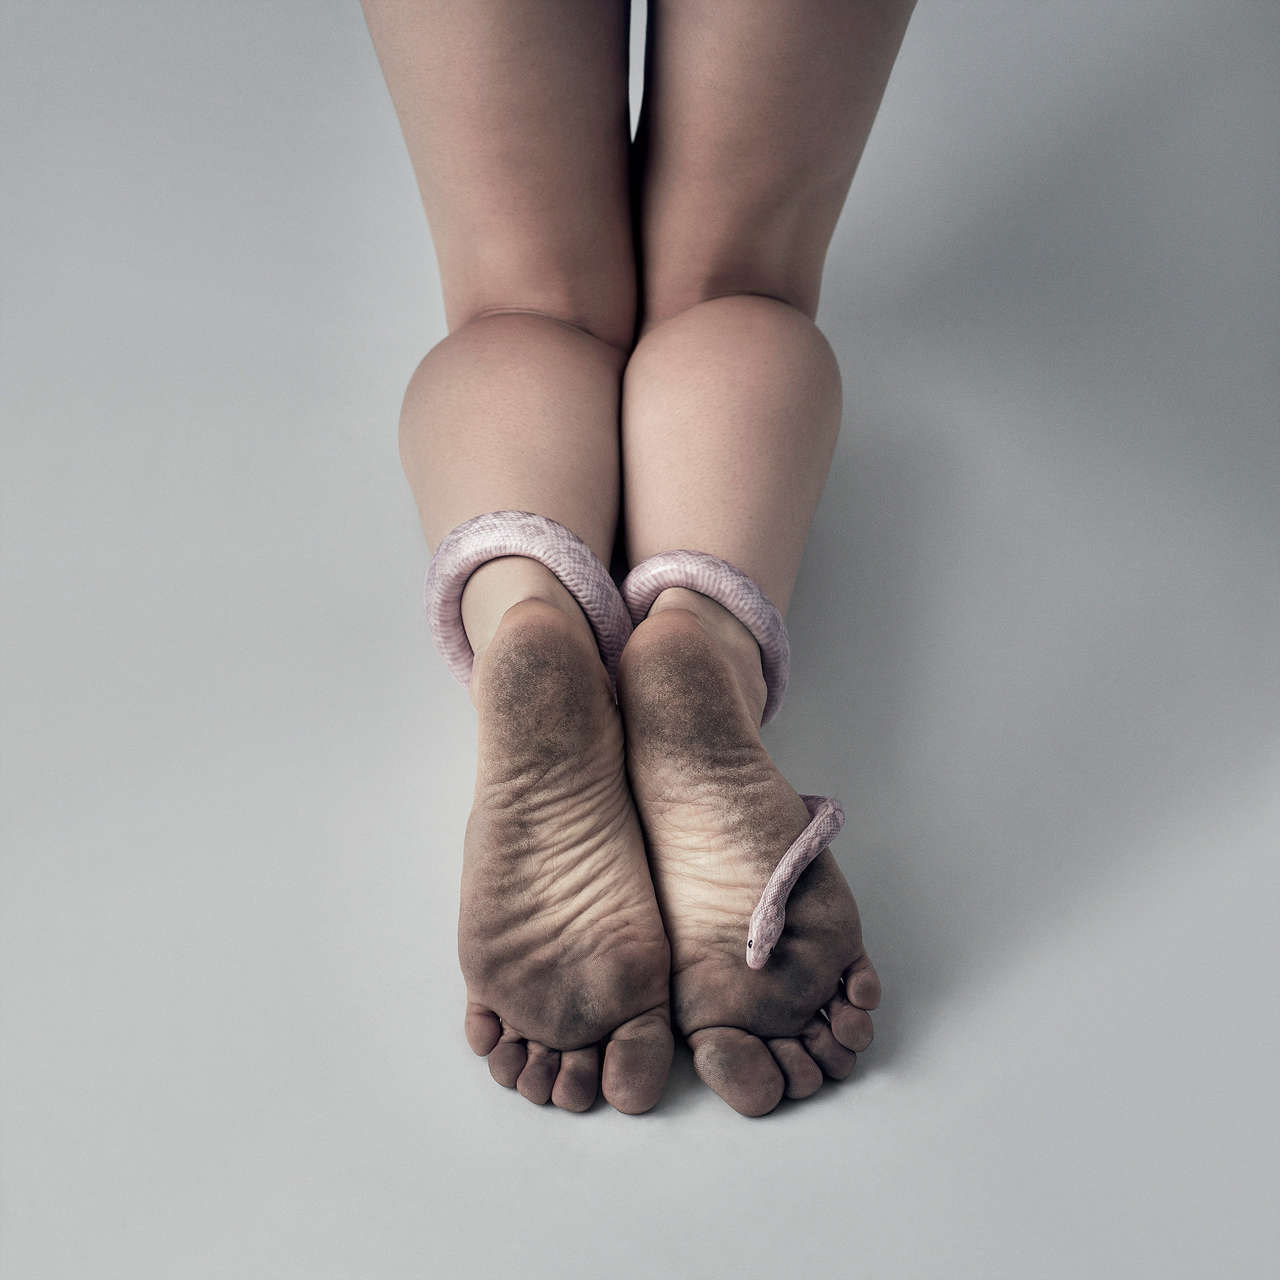 Zarah Mahler Feet